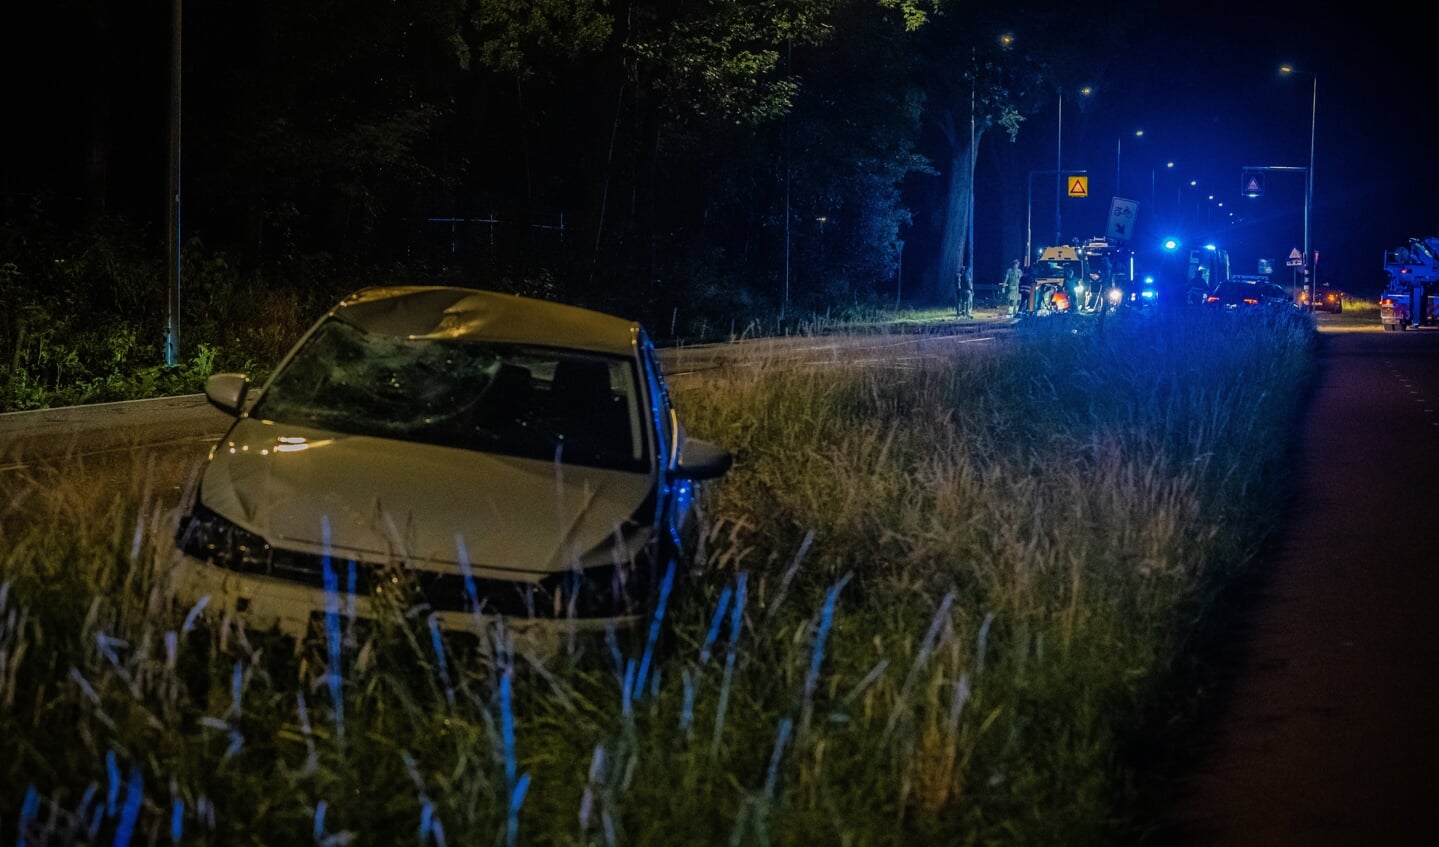 De auto zelf kwam ruim honderd meter verderop in de berm tot stilstand. Foto: Nieuws Op Beeld/Jeffrey Jacobs